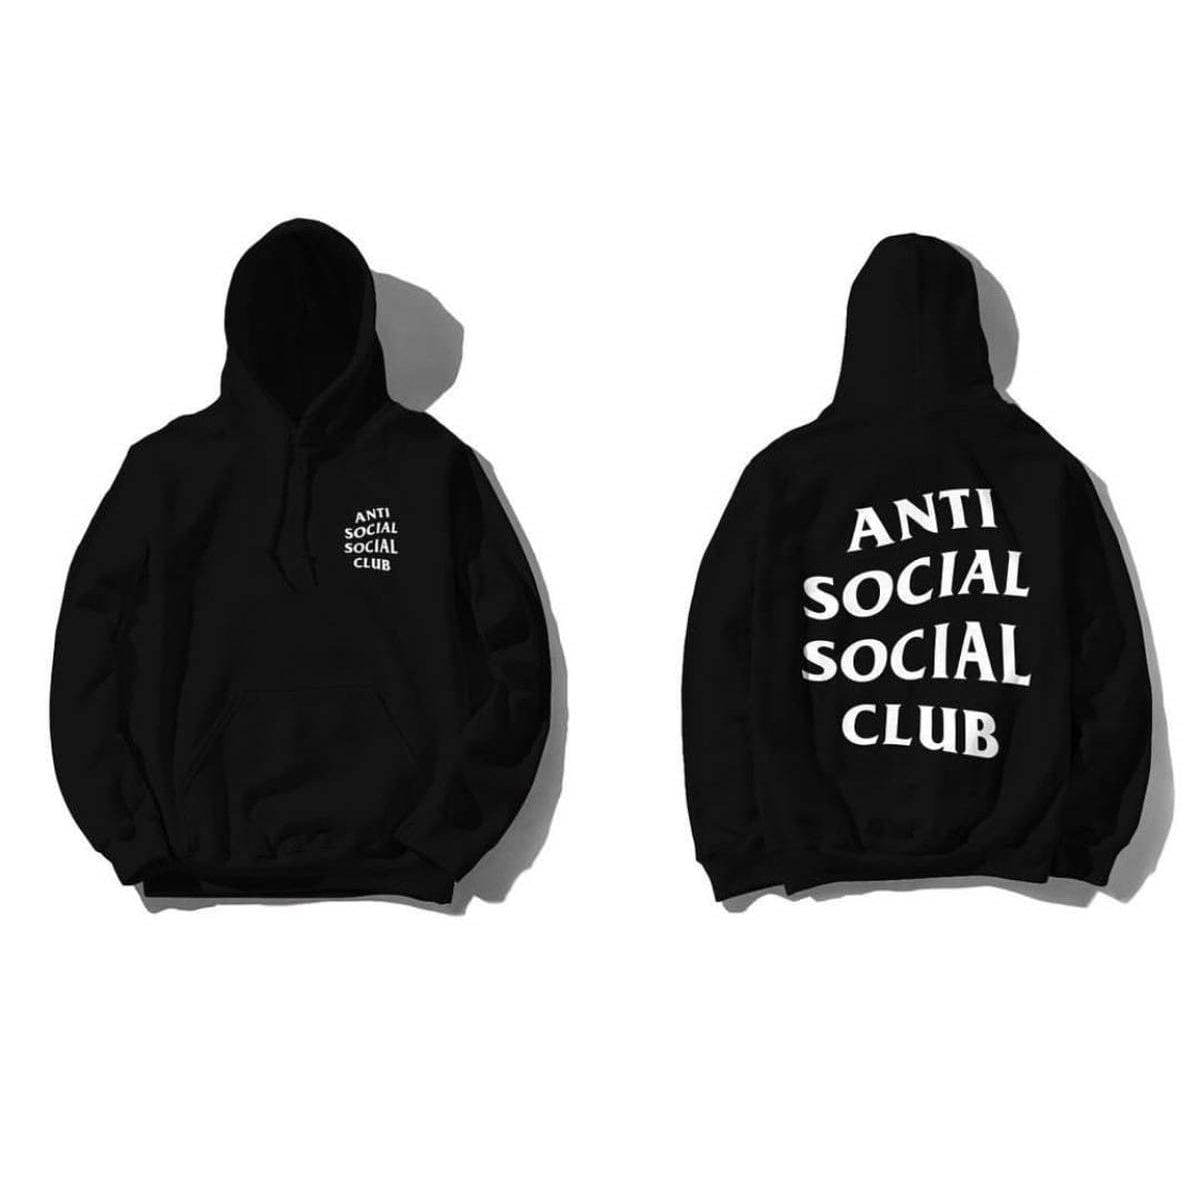 ANTI SOCIAL SOCIAL CLUB CLOTHING ANTI SOCIAL SOCIAL CLUB HOODIE BLACK